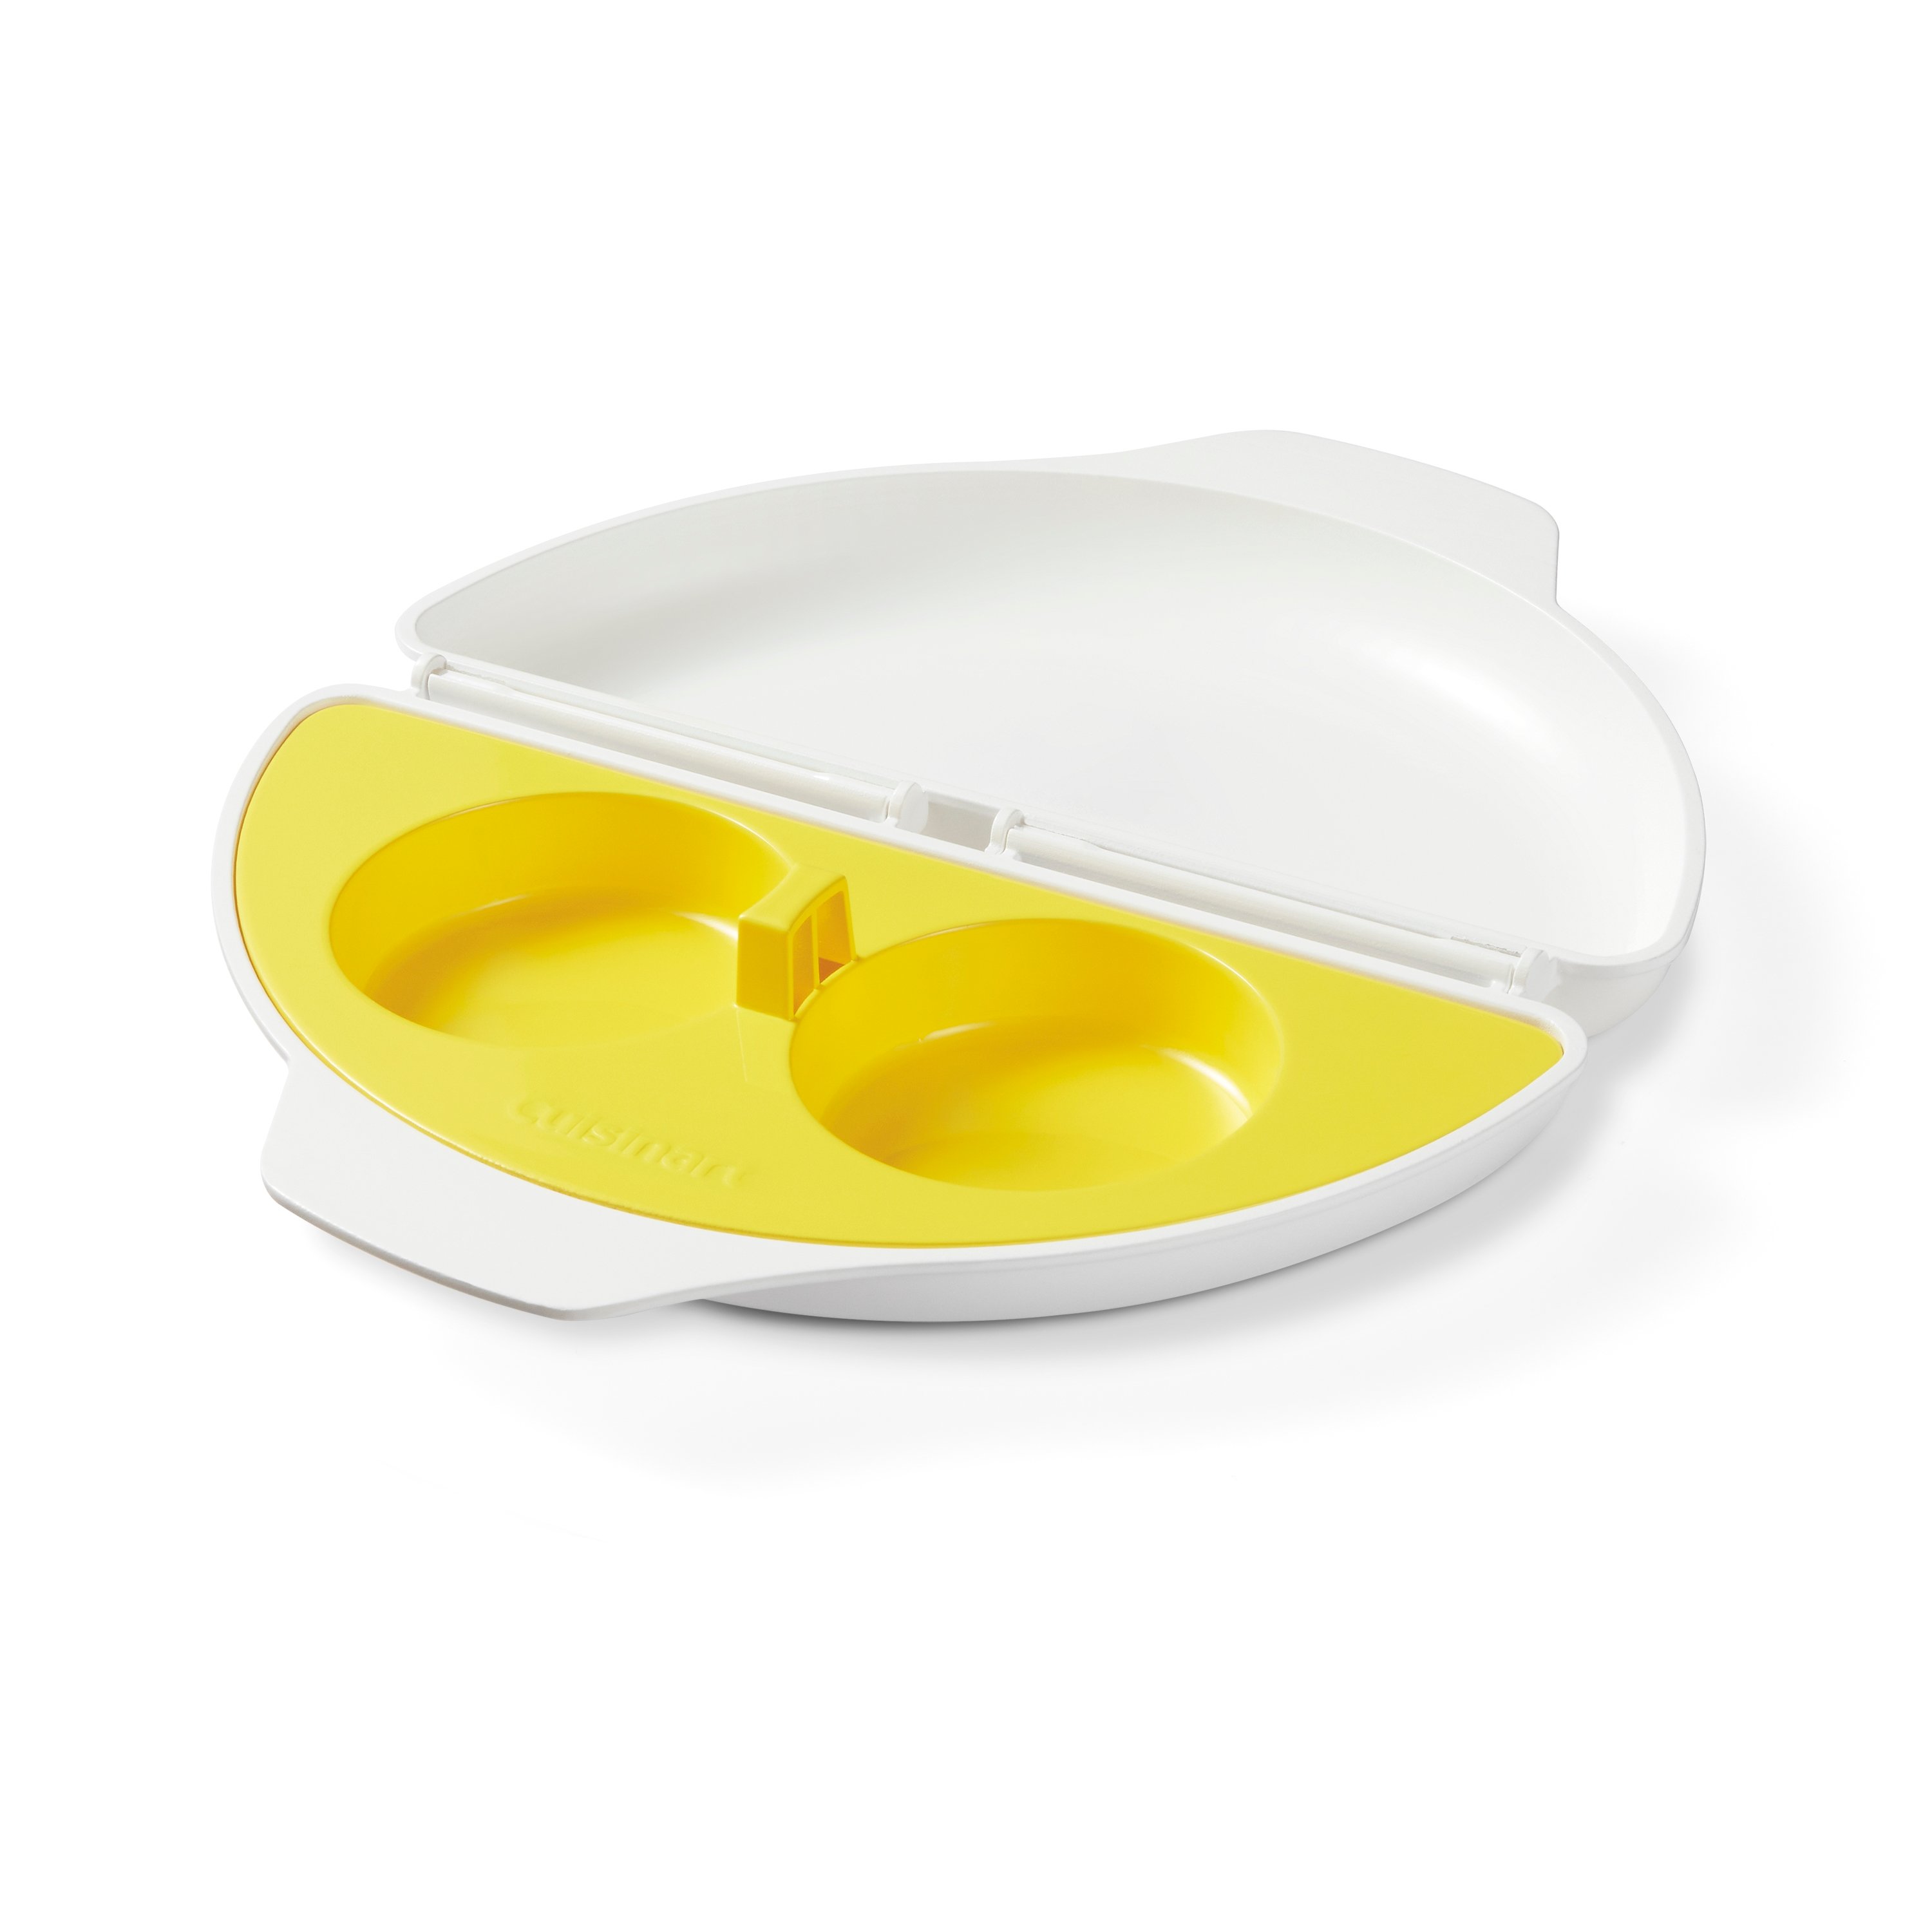 Sunbeam #63088 Microwave Omelette Maker/ Egg Poacher